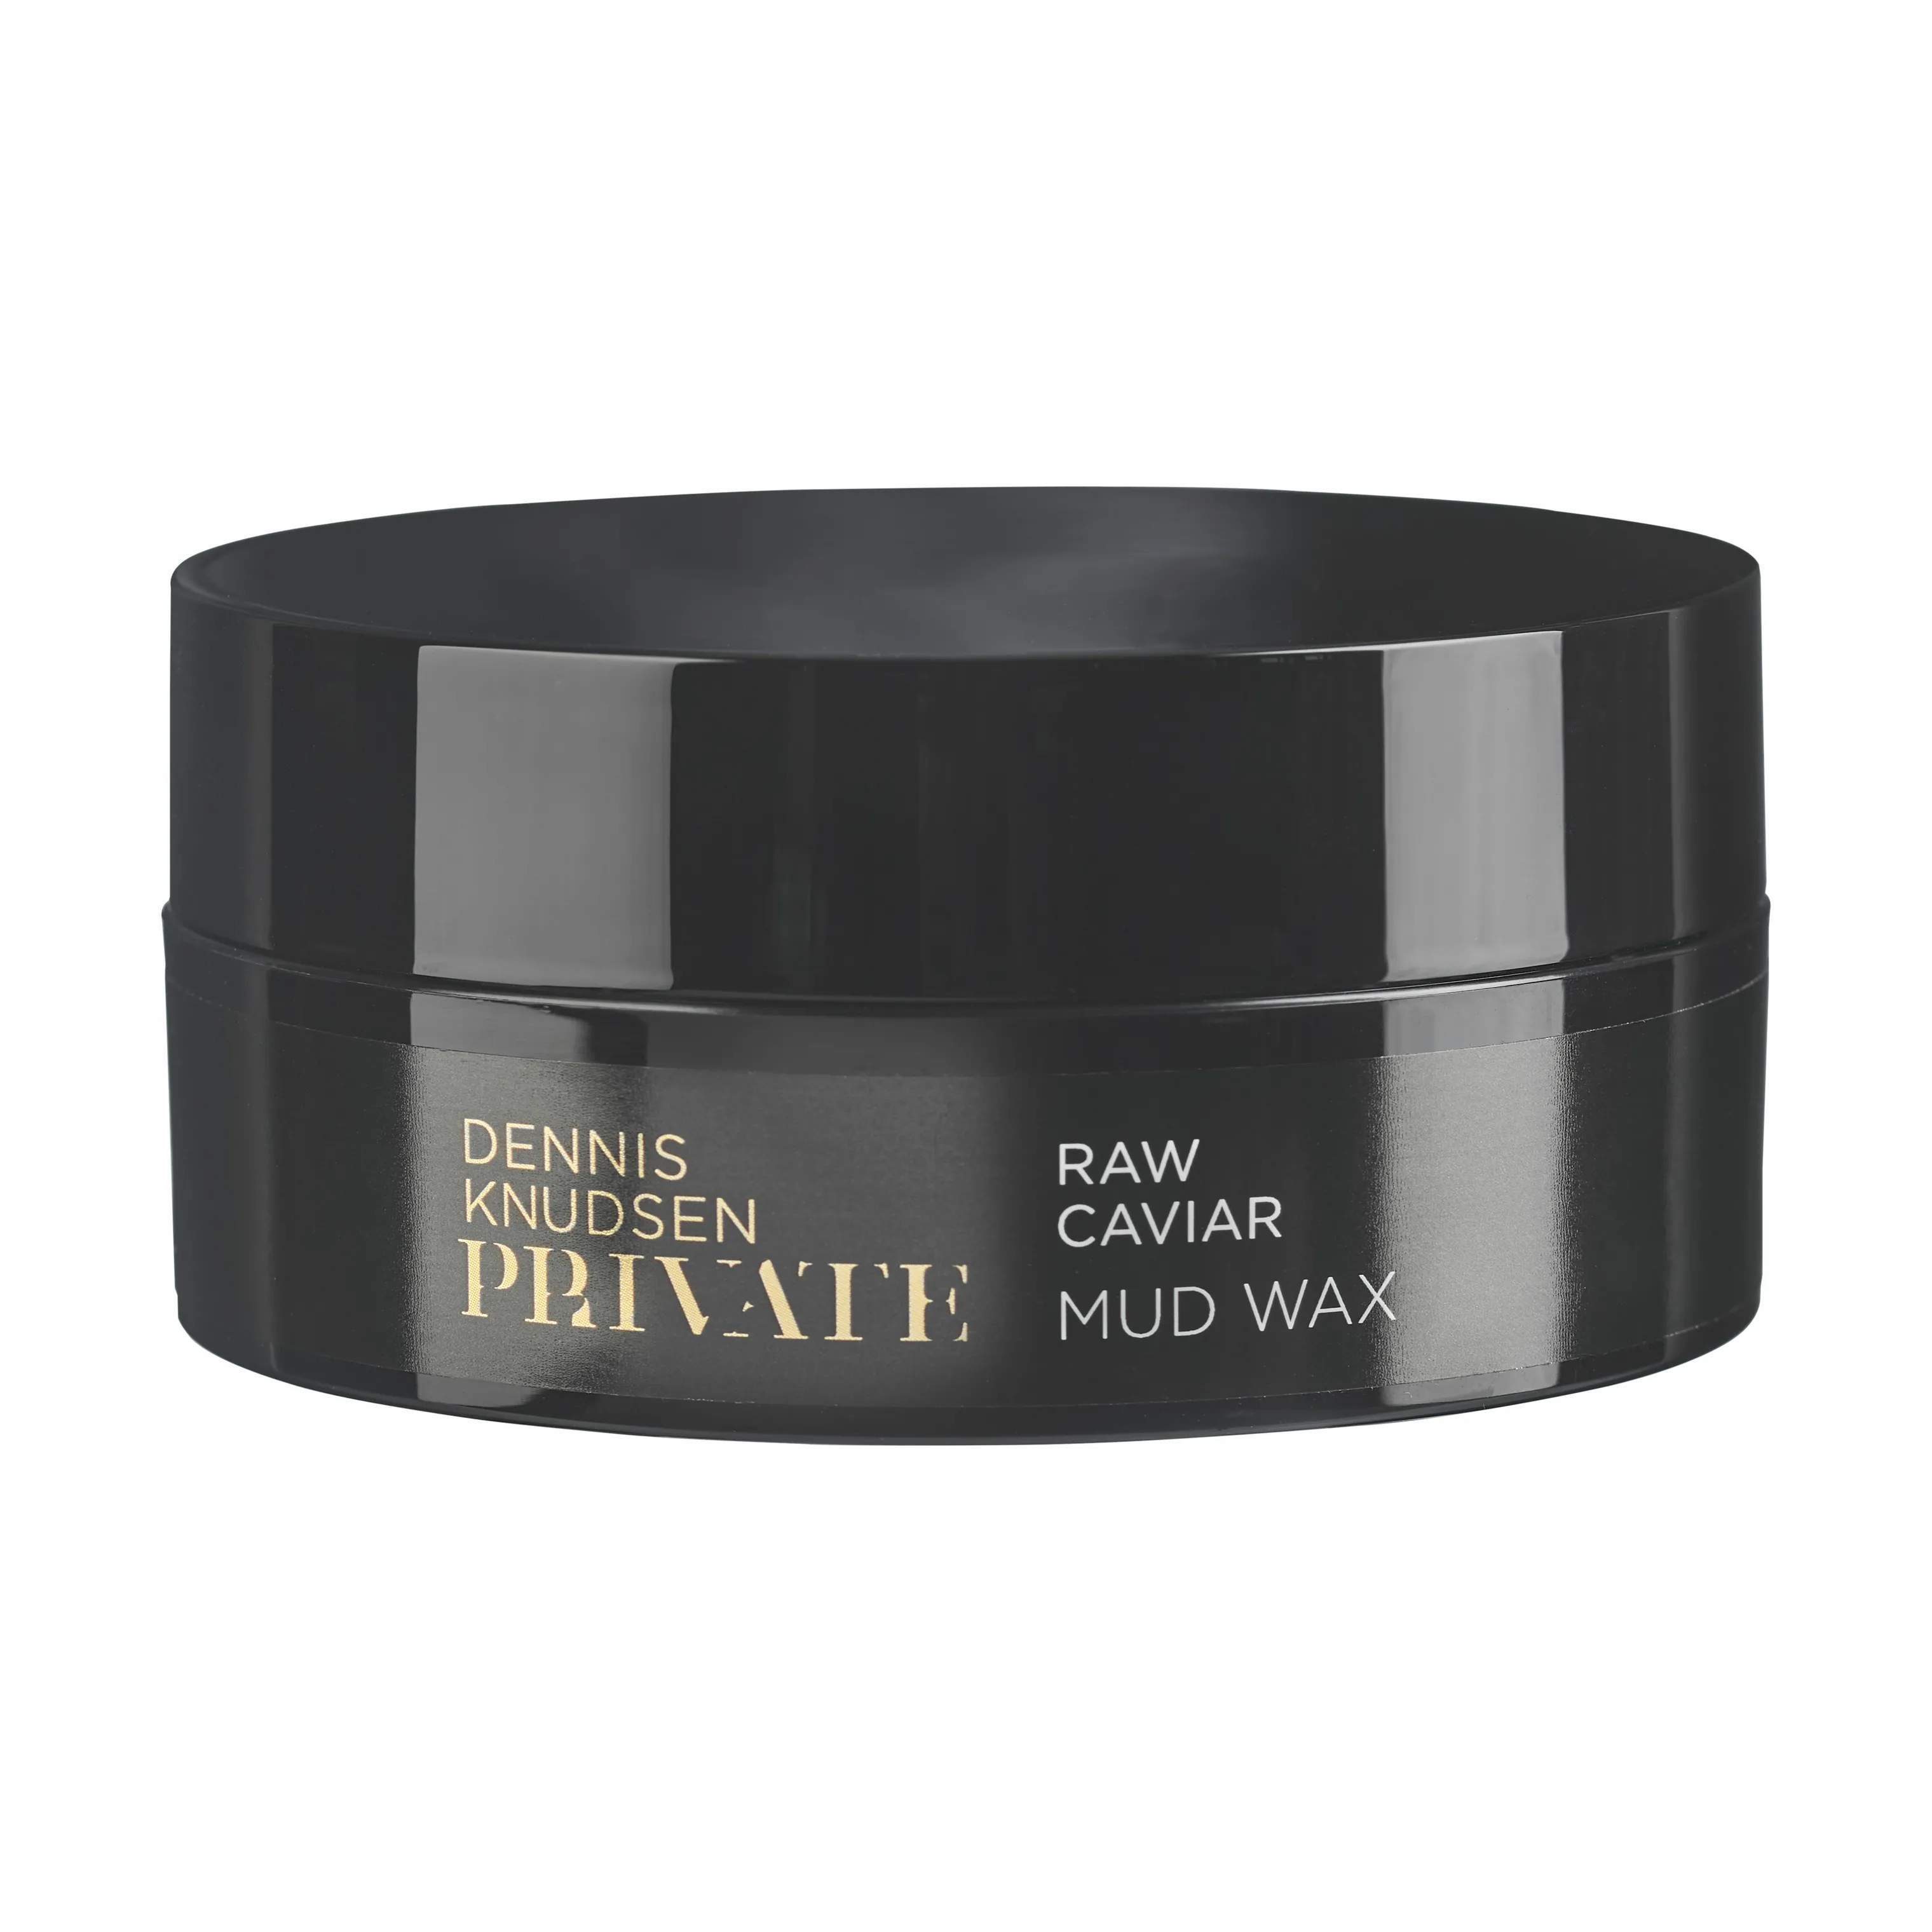 PRIVATE Raw Caviar Mud Wax, sort, large